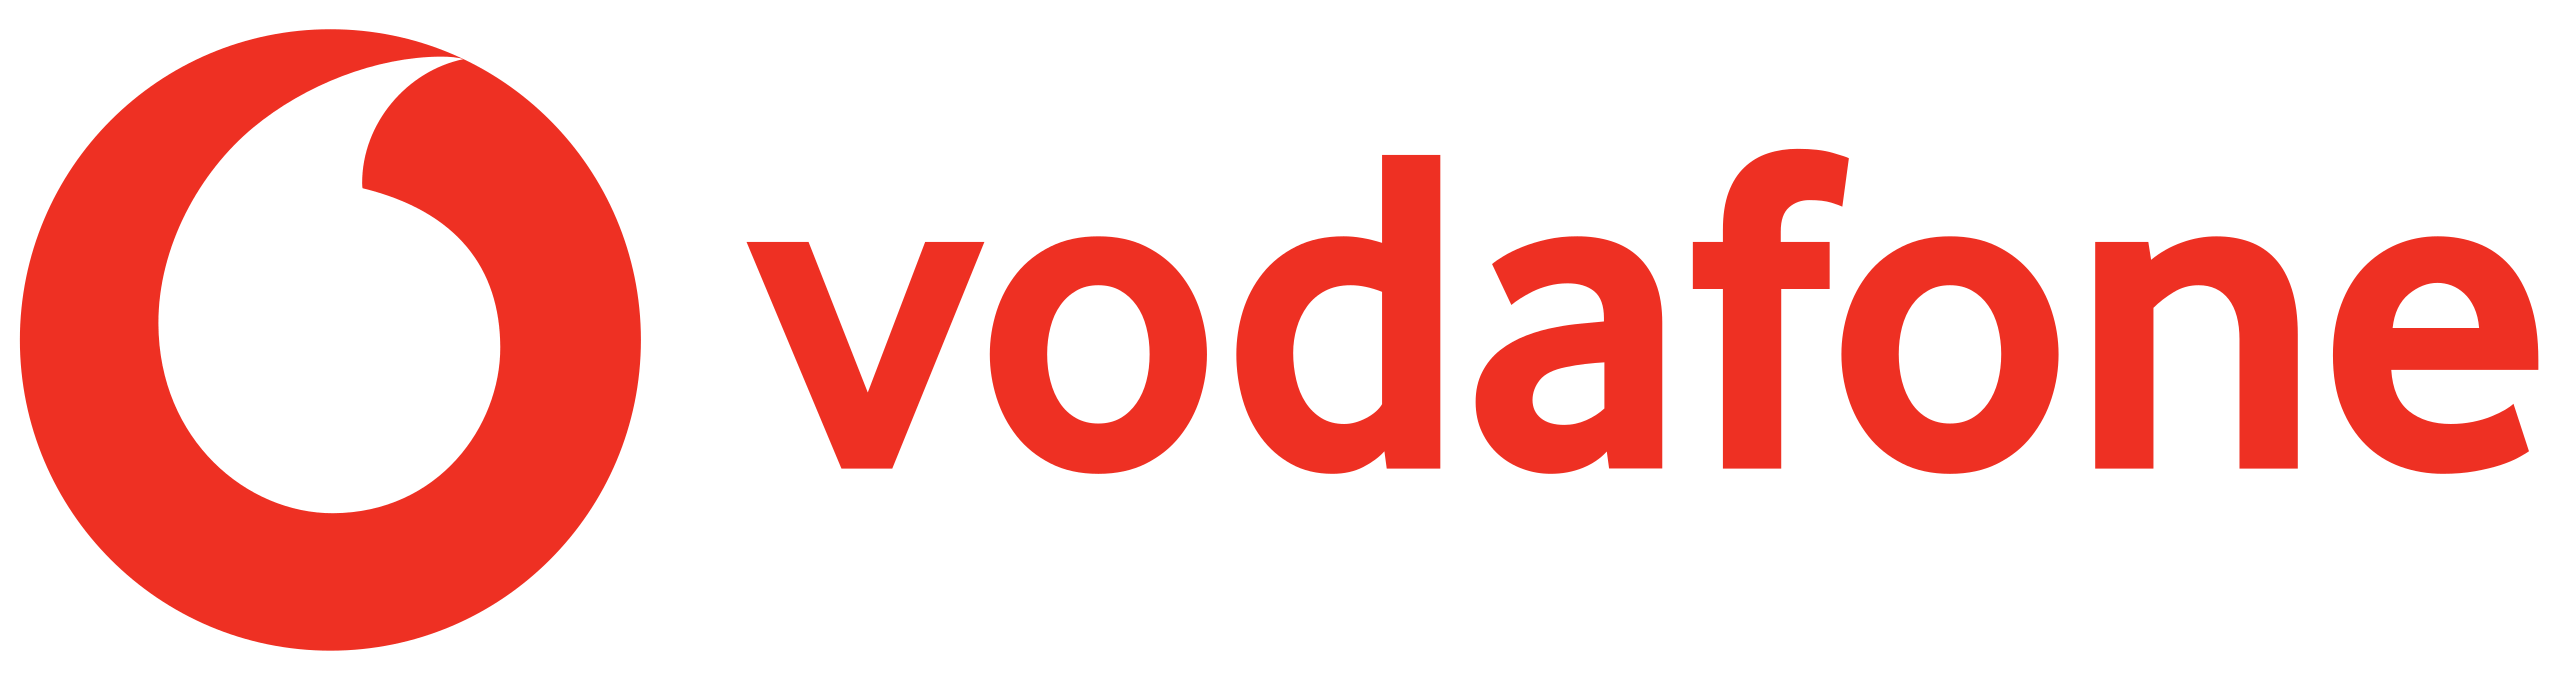 Vodofone logo Ant Media Server